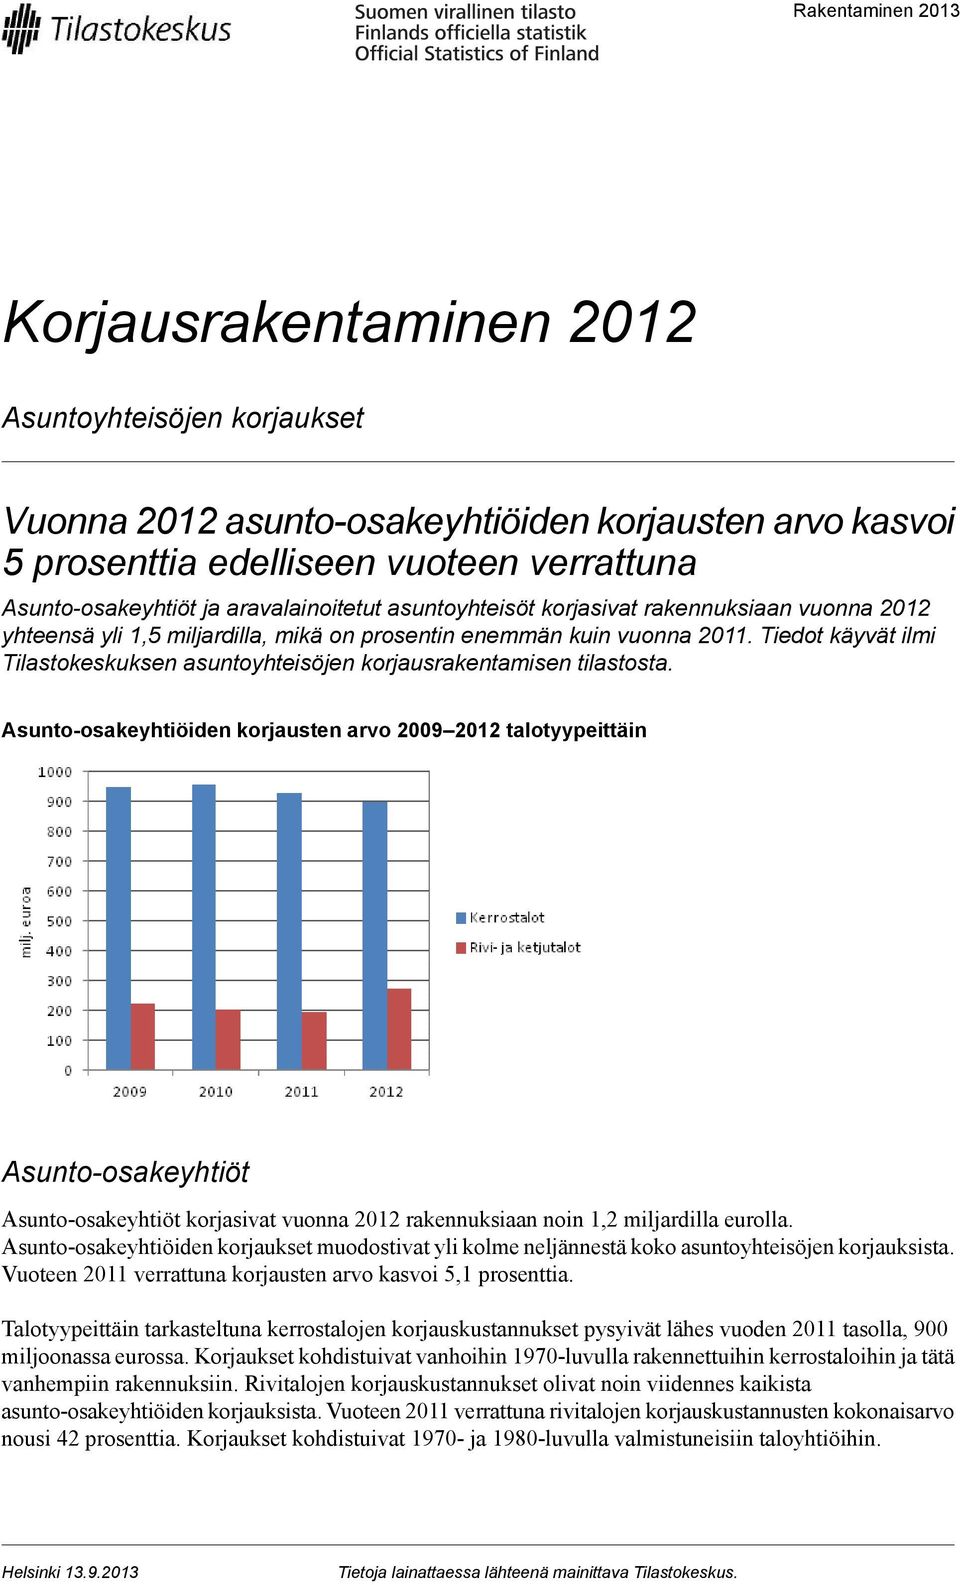 Tiedot käyvät ilmi Tilastokeskuksen asuntoyhteisöjen korjausrakentamisen tilastosta.